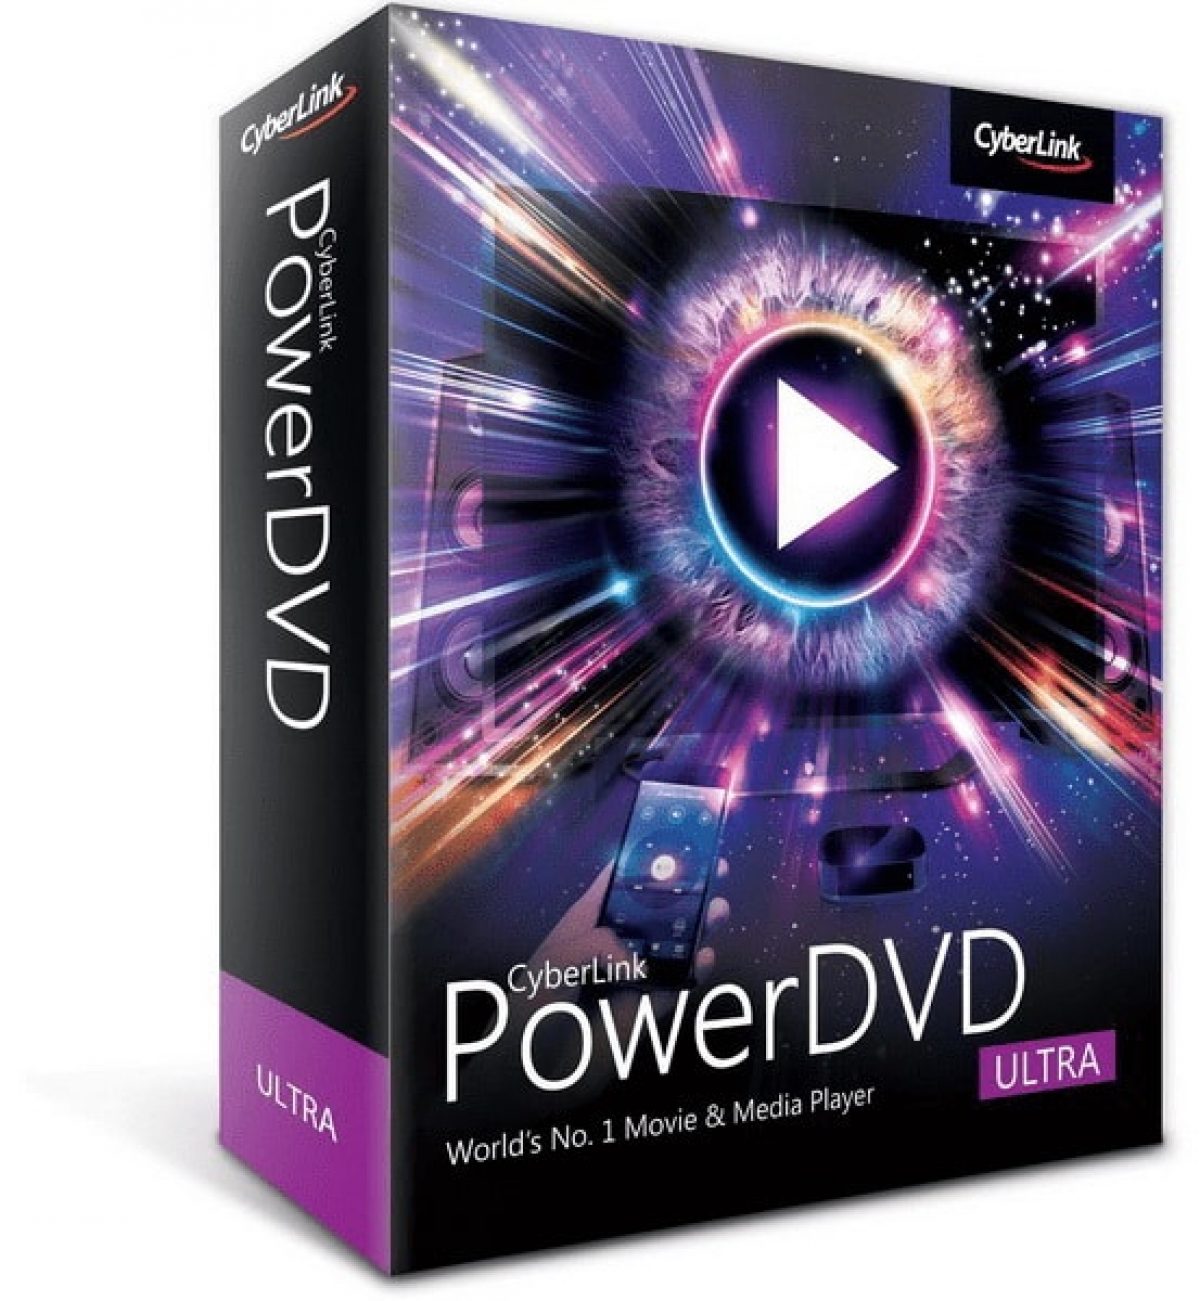 CyberLink PowerDVD Ultra 22.0.3418.62 free download